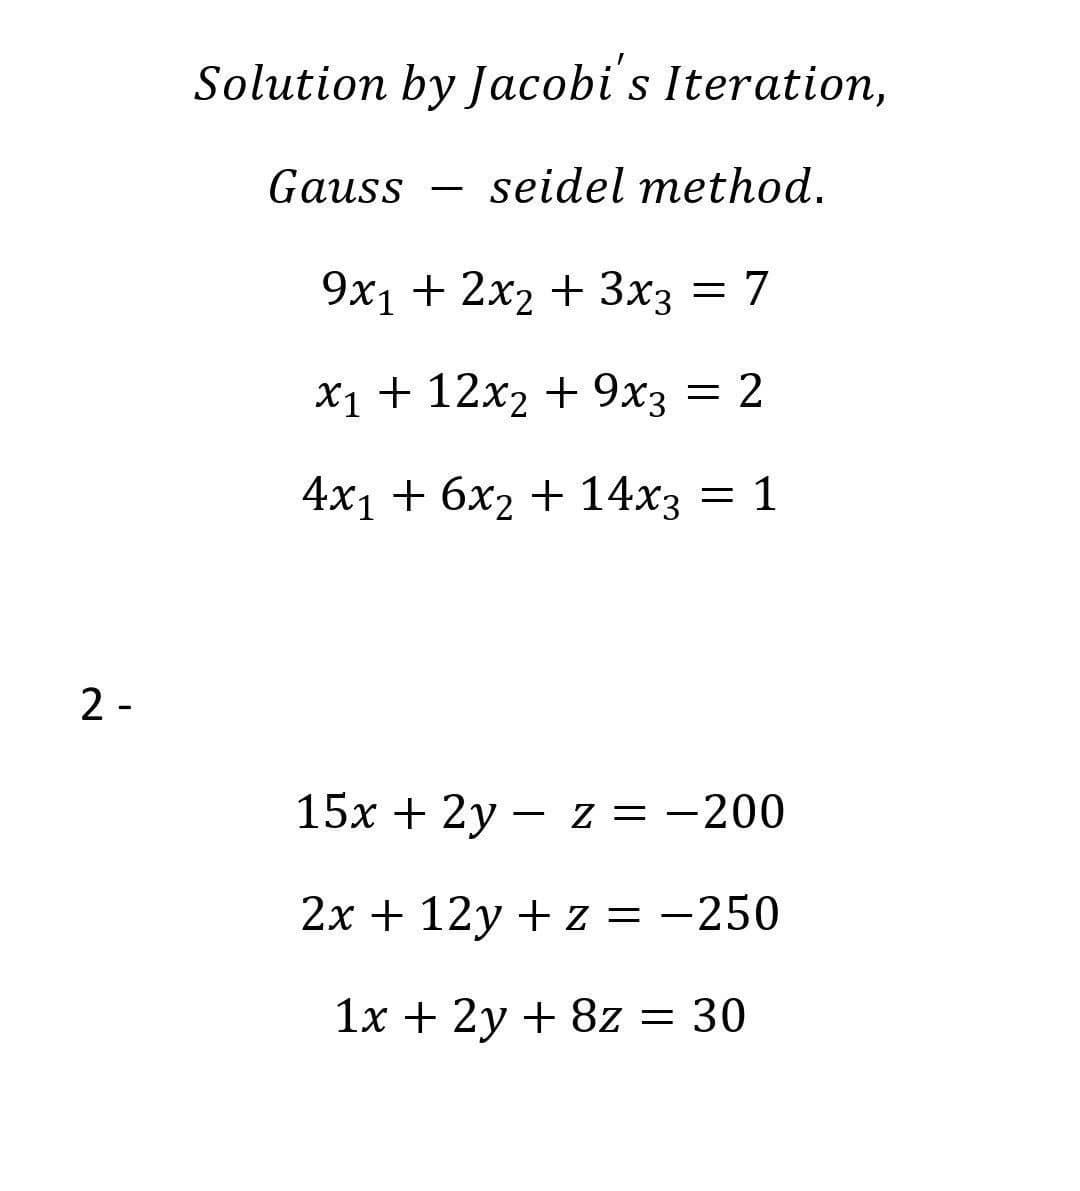 Solution by Jacobi's Iteration,
Gauss
seidel method.
-
9х1 + 2x2 + 3хз
= 7
Х1 + 12х2 + 9х3
= 2
4х1 + бх2 + 14хз — 1
2 -
15x + 2y – z = -200
2x + 12y + z = -250
1x + 2y + 8z = 30
